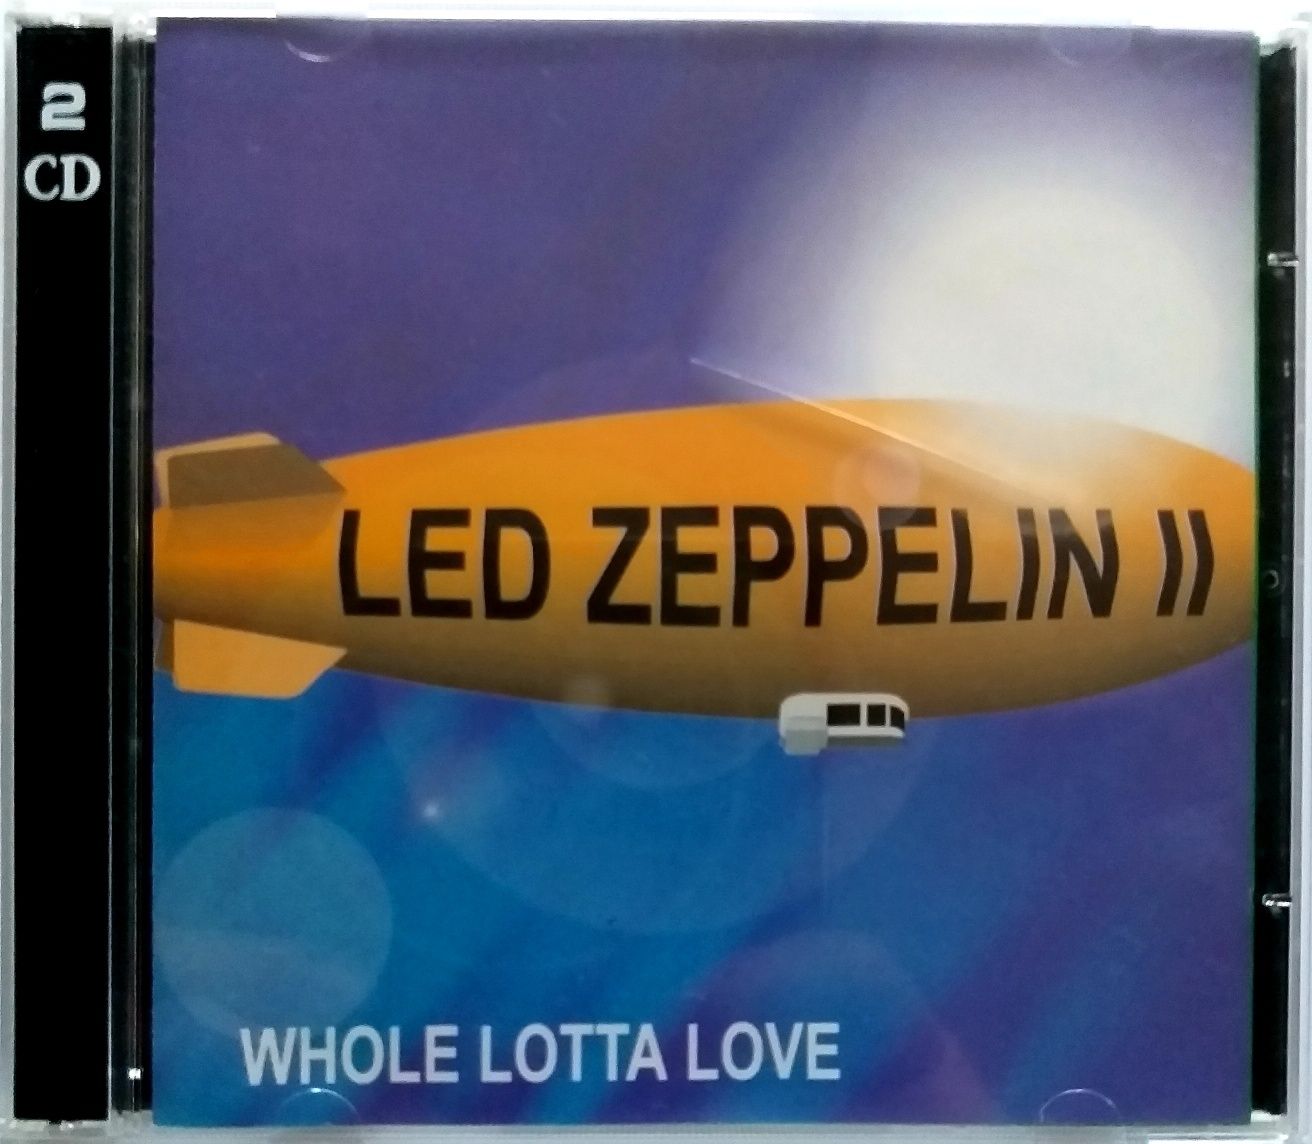 Led Zeppelin II Whole Lotta Love/Marcin Wolski Kabaret 60-tka